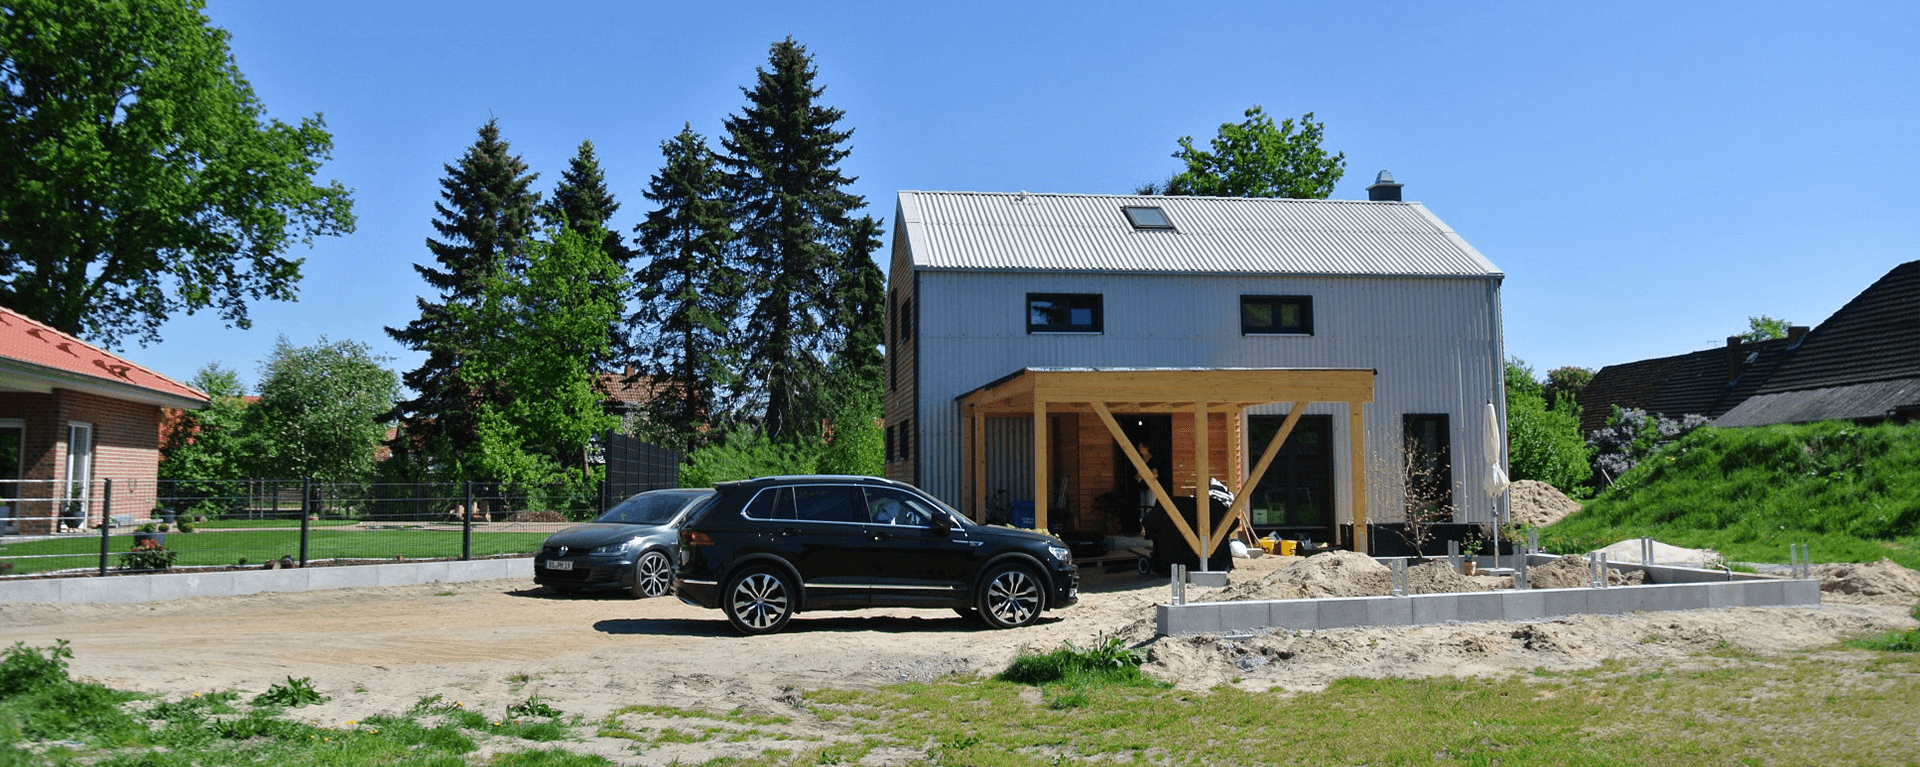 Die klare Form des Hauses und die verwendeten, einfachen Fassadenmaterialien Holz und Faserzement-Wellplatte fügen es in die nähere Umgebung ein.